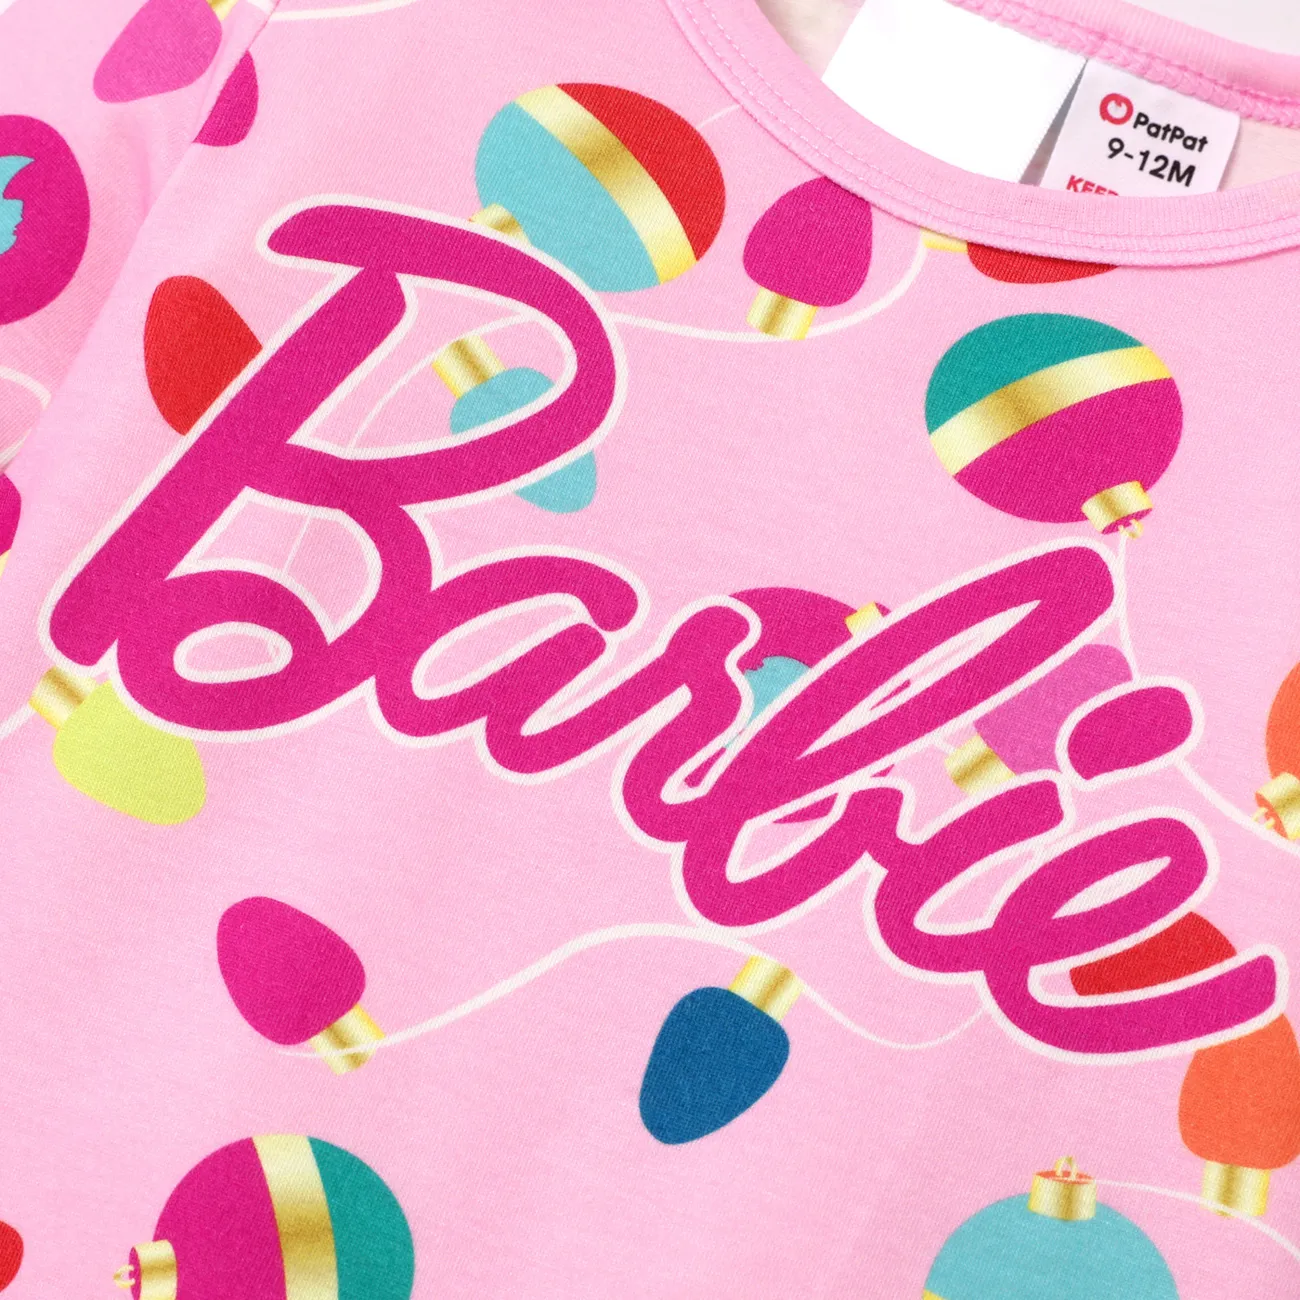 Barbie Navidad Mami y yo Conjuntos combinados para familia Pijamas (Flame Resistant) Rosado big image 1